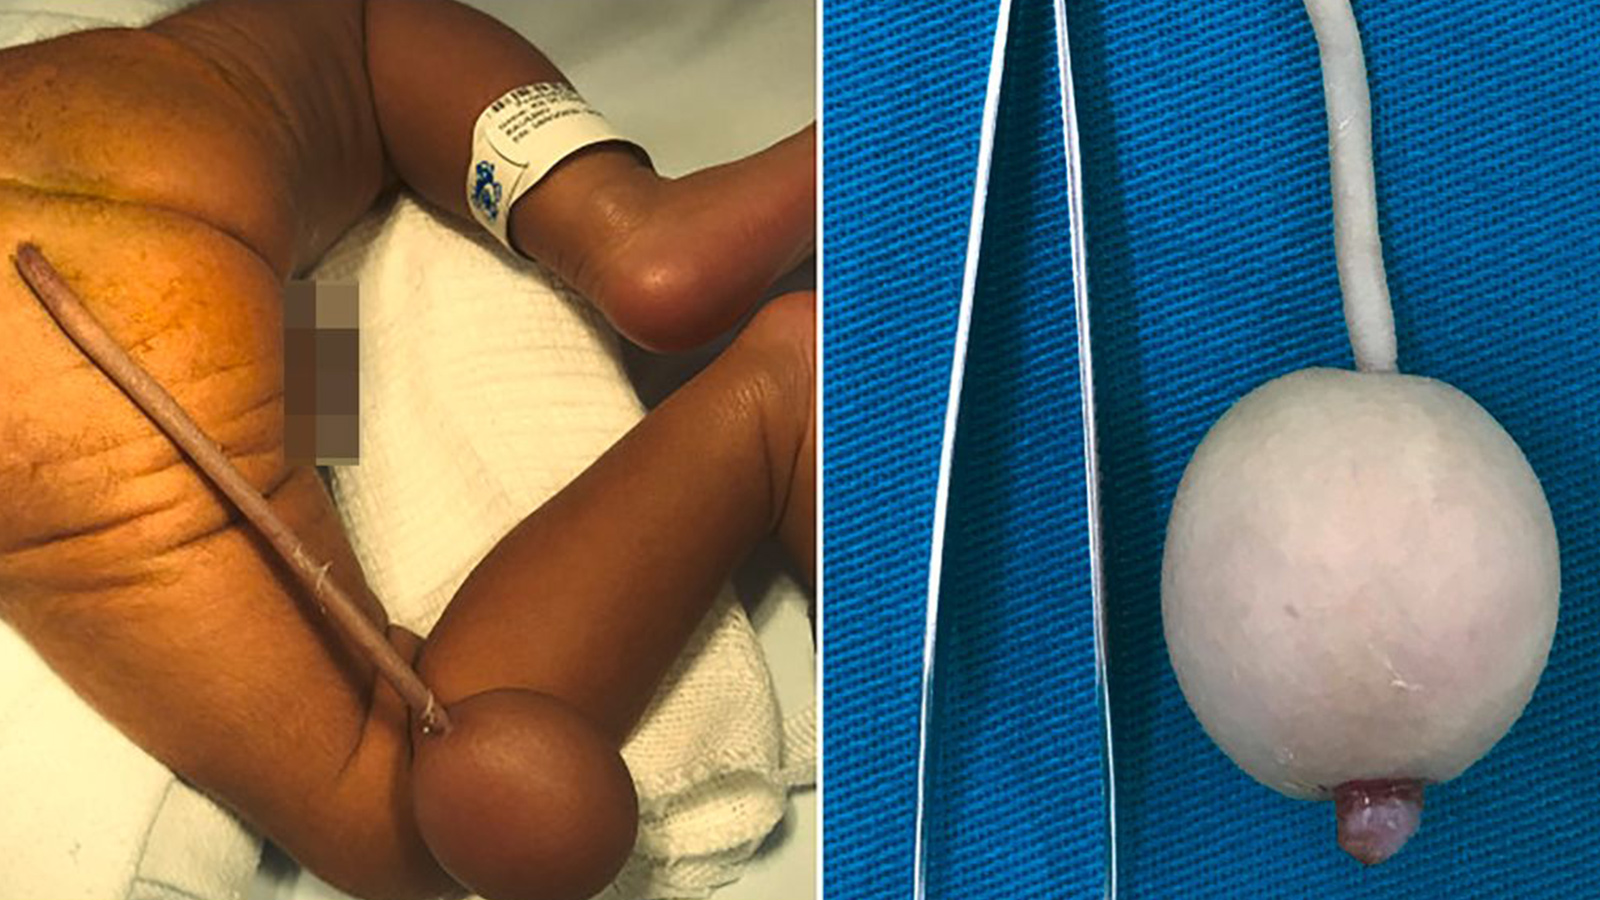 Tıp dünyası şoke oldu, doktorlar gördüklerine inanamadı! Dünyadaki 40 vakadan biri olan bebek, 12 cm kuyrukla doğdu